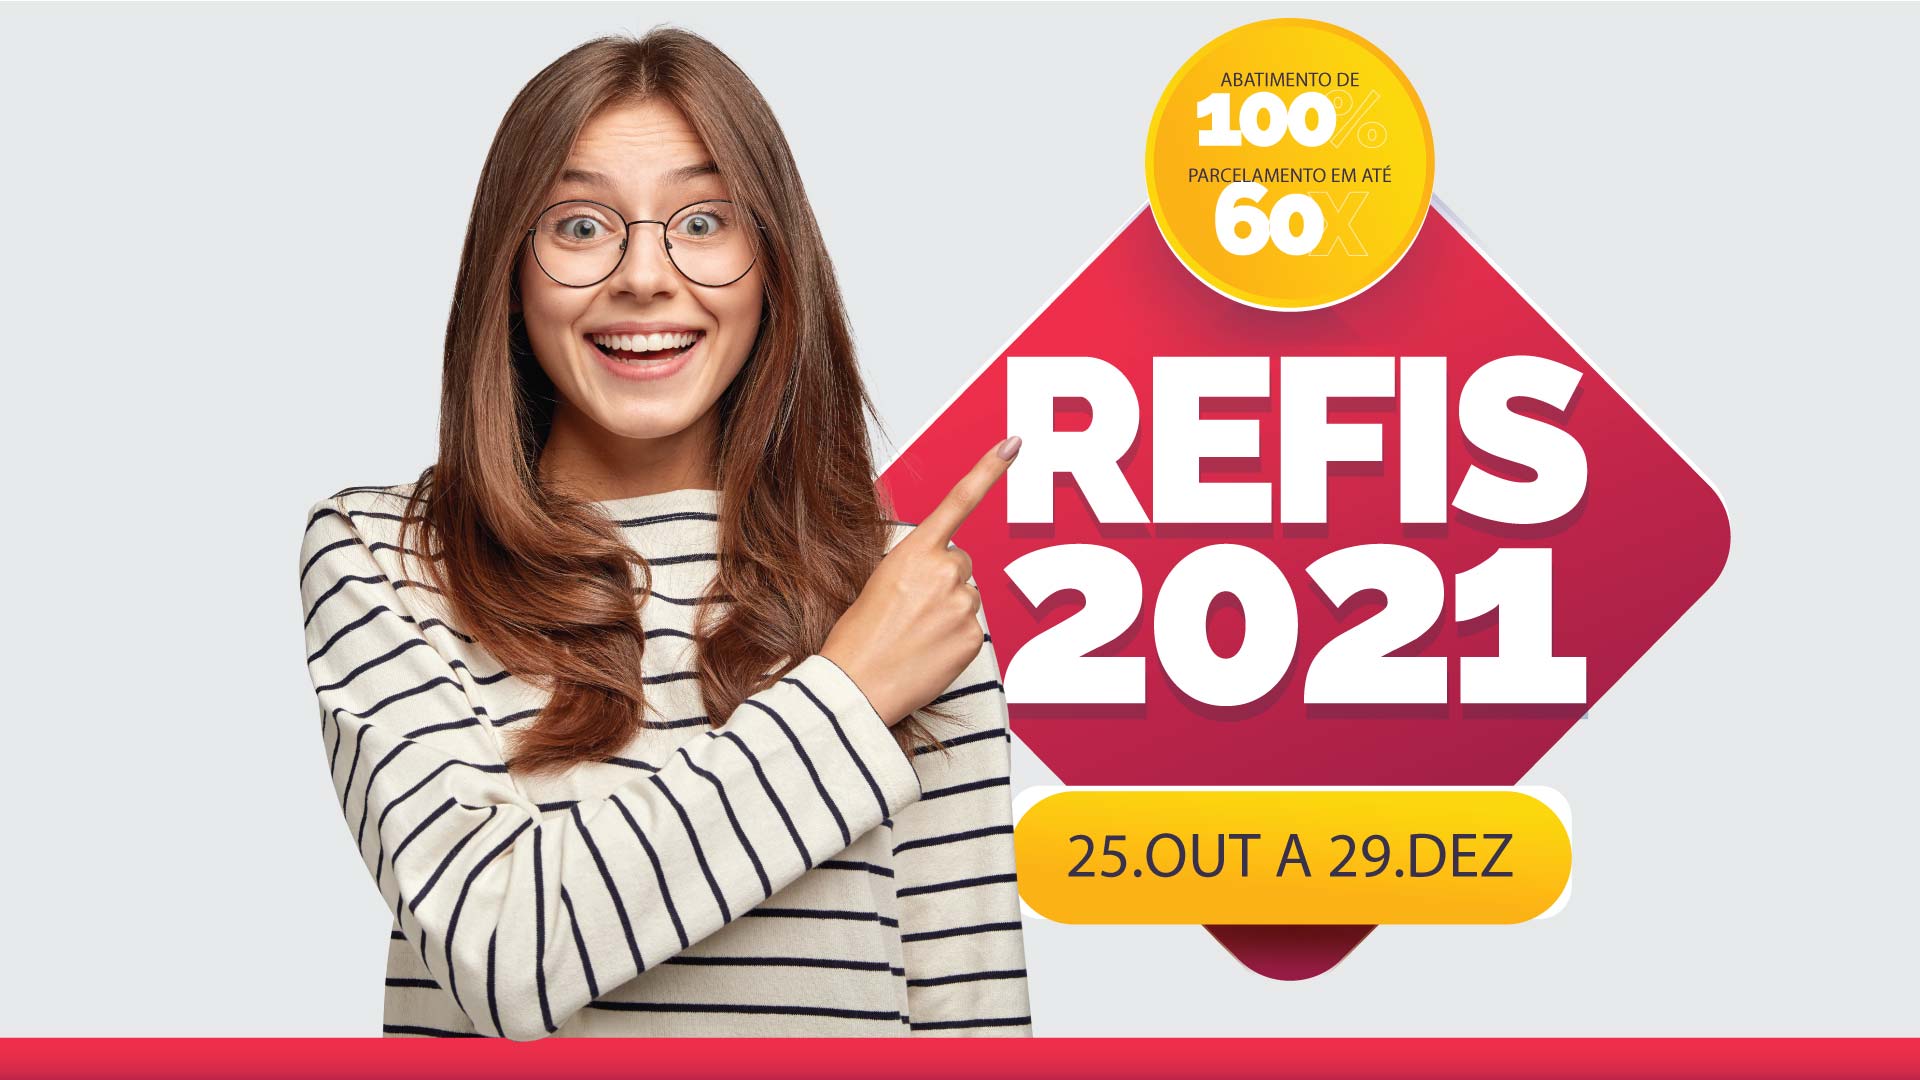 REFIS 2021 - DESCONTOS ESPECIAS PARA O CONTRIBUINTE NEGOCIAR SEUS DÉBITOS COM MUNICÍPIO   